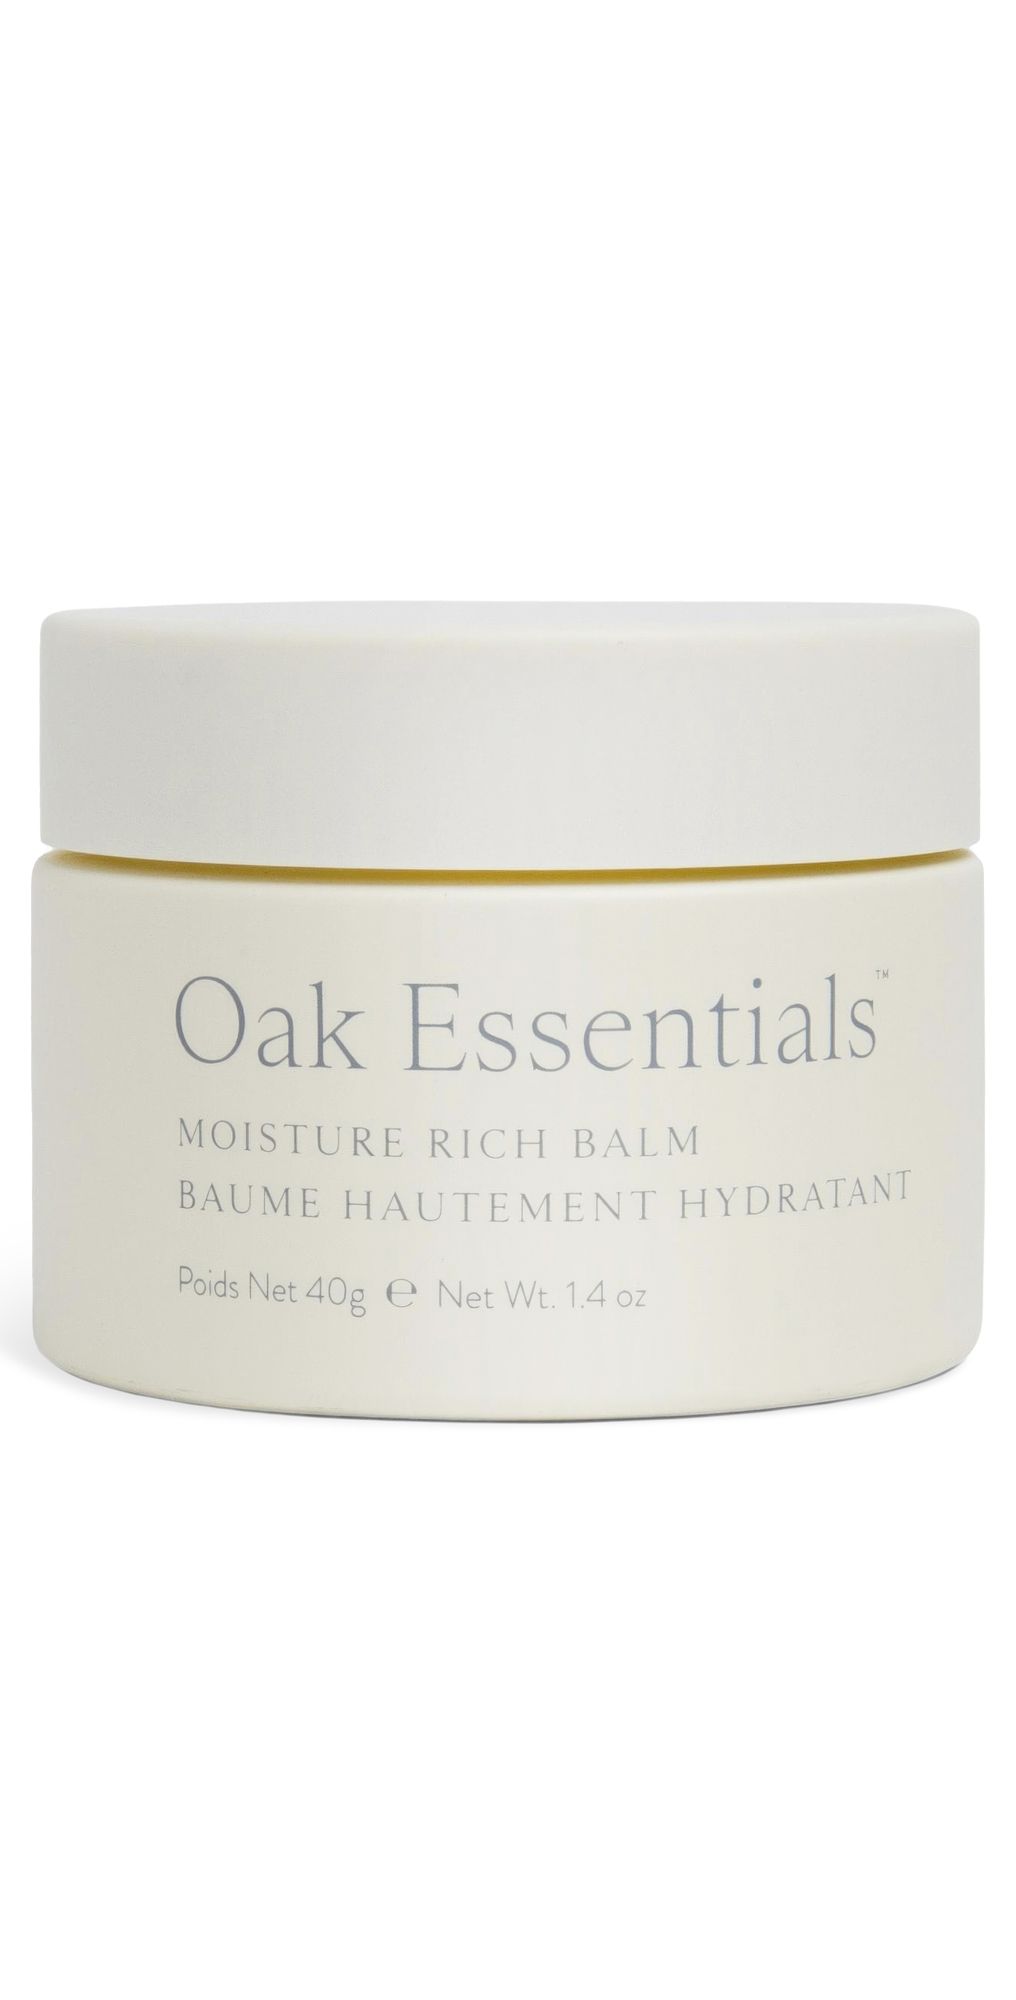 Oak Essentials Moisture Rich Balm | Shopbop